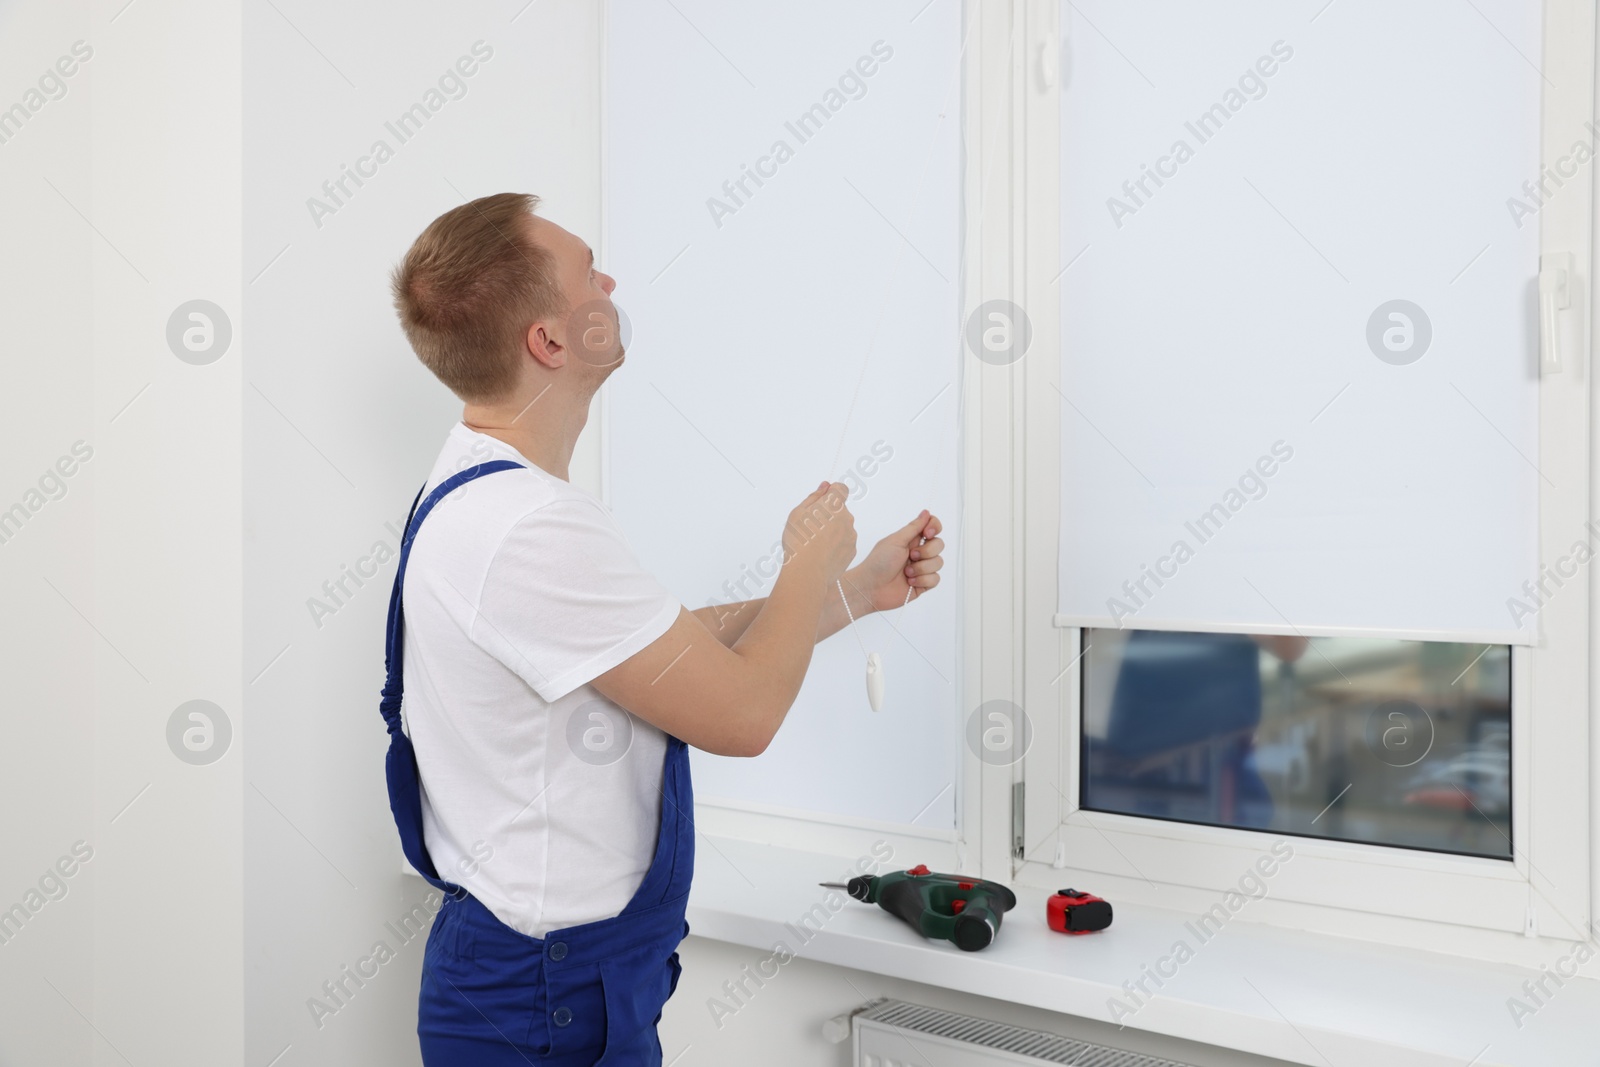 Photo of Worker in uniform opening roller window blind indoors